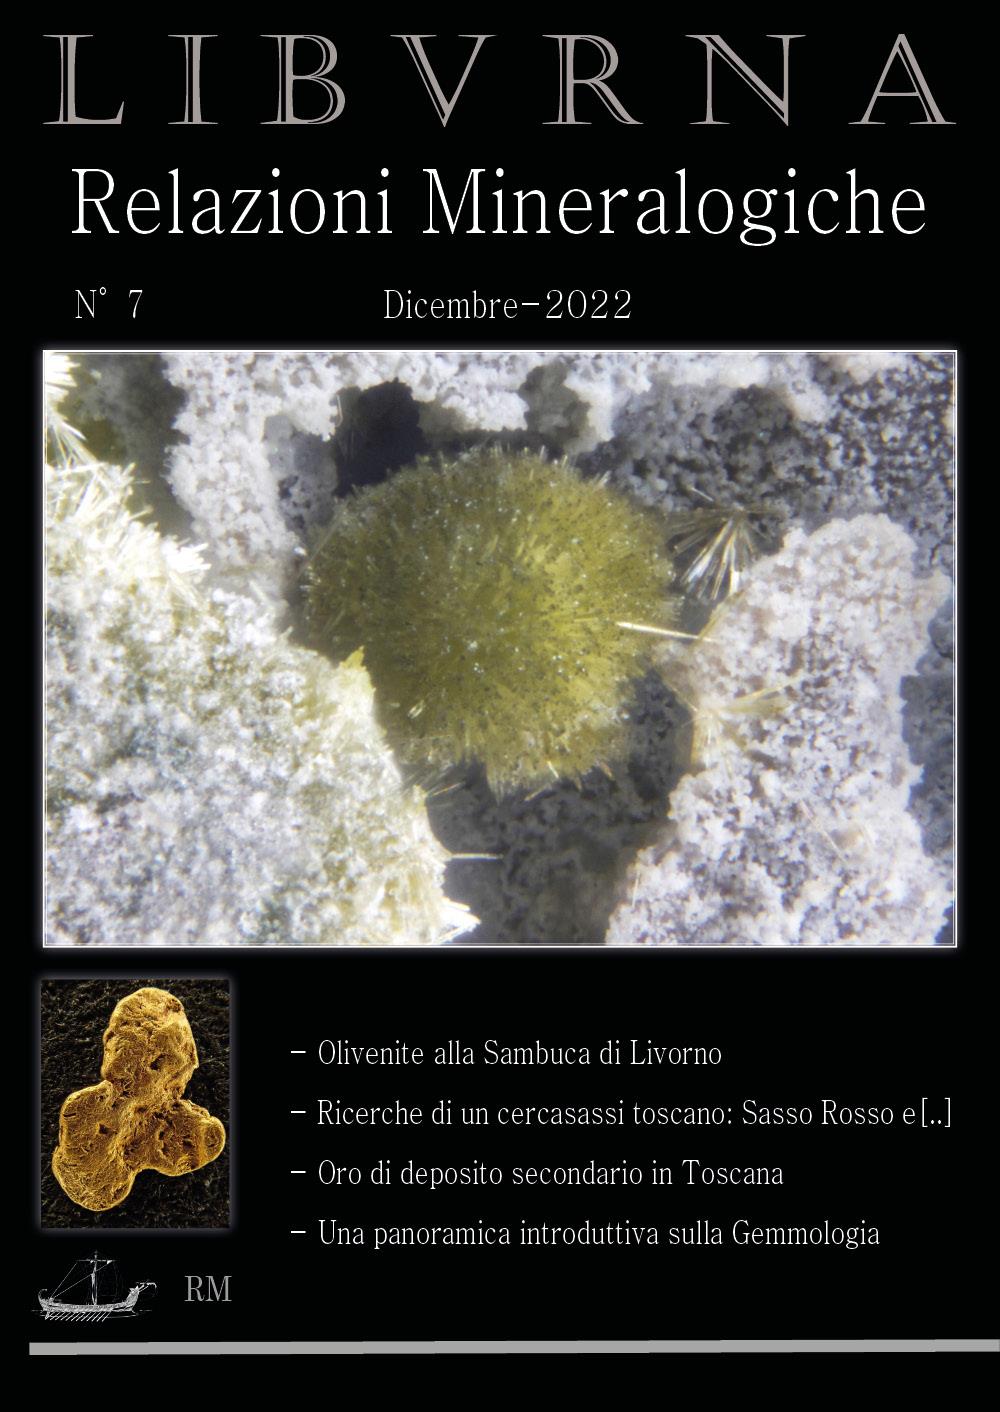 LIBVRNA N°7 - Dicembre 2022 -  Relazioni Mineralogiche